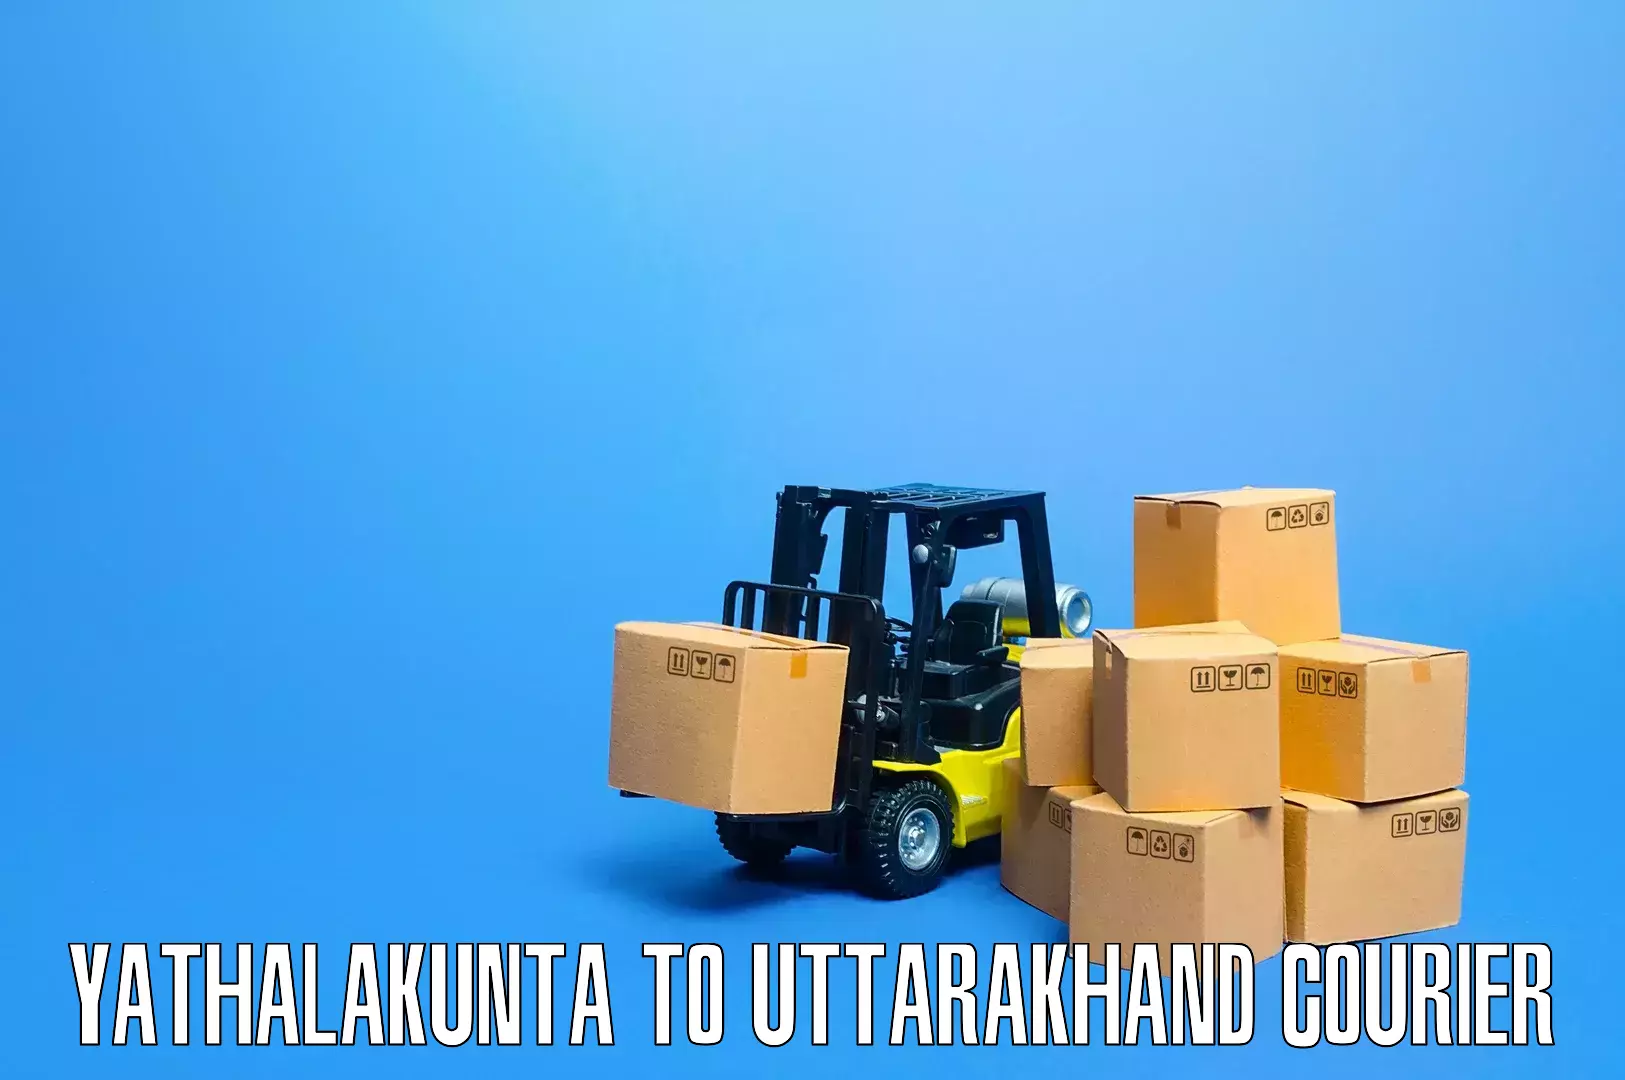 Efficient moving company Yathalakunta to Doiwala